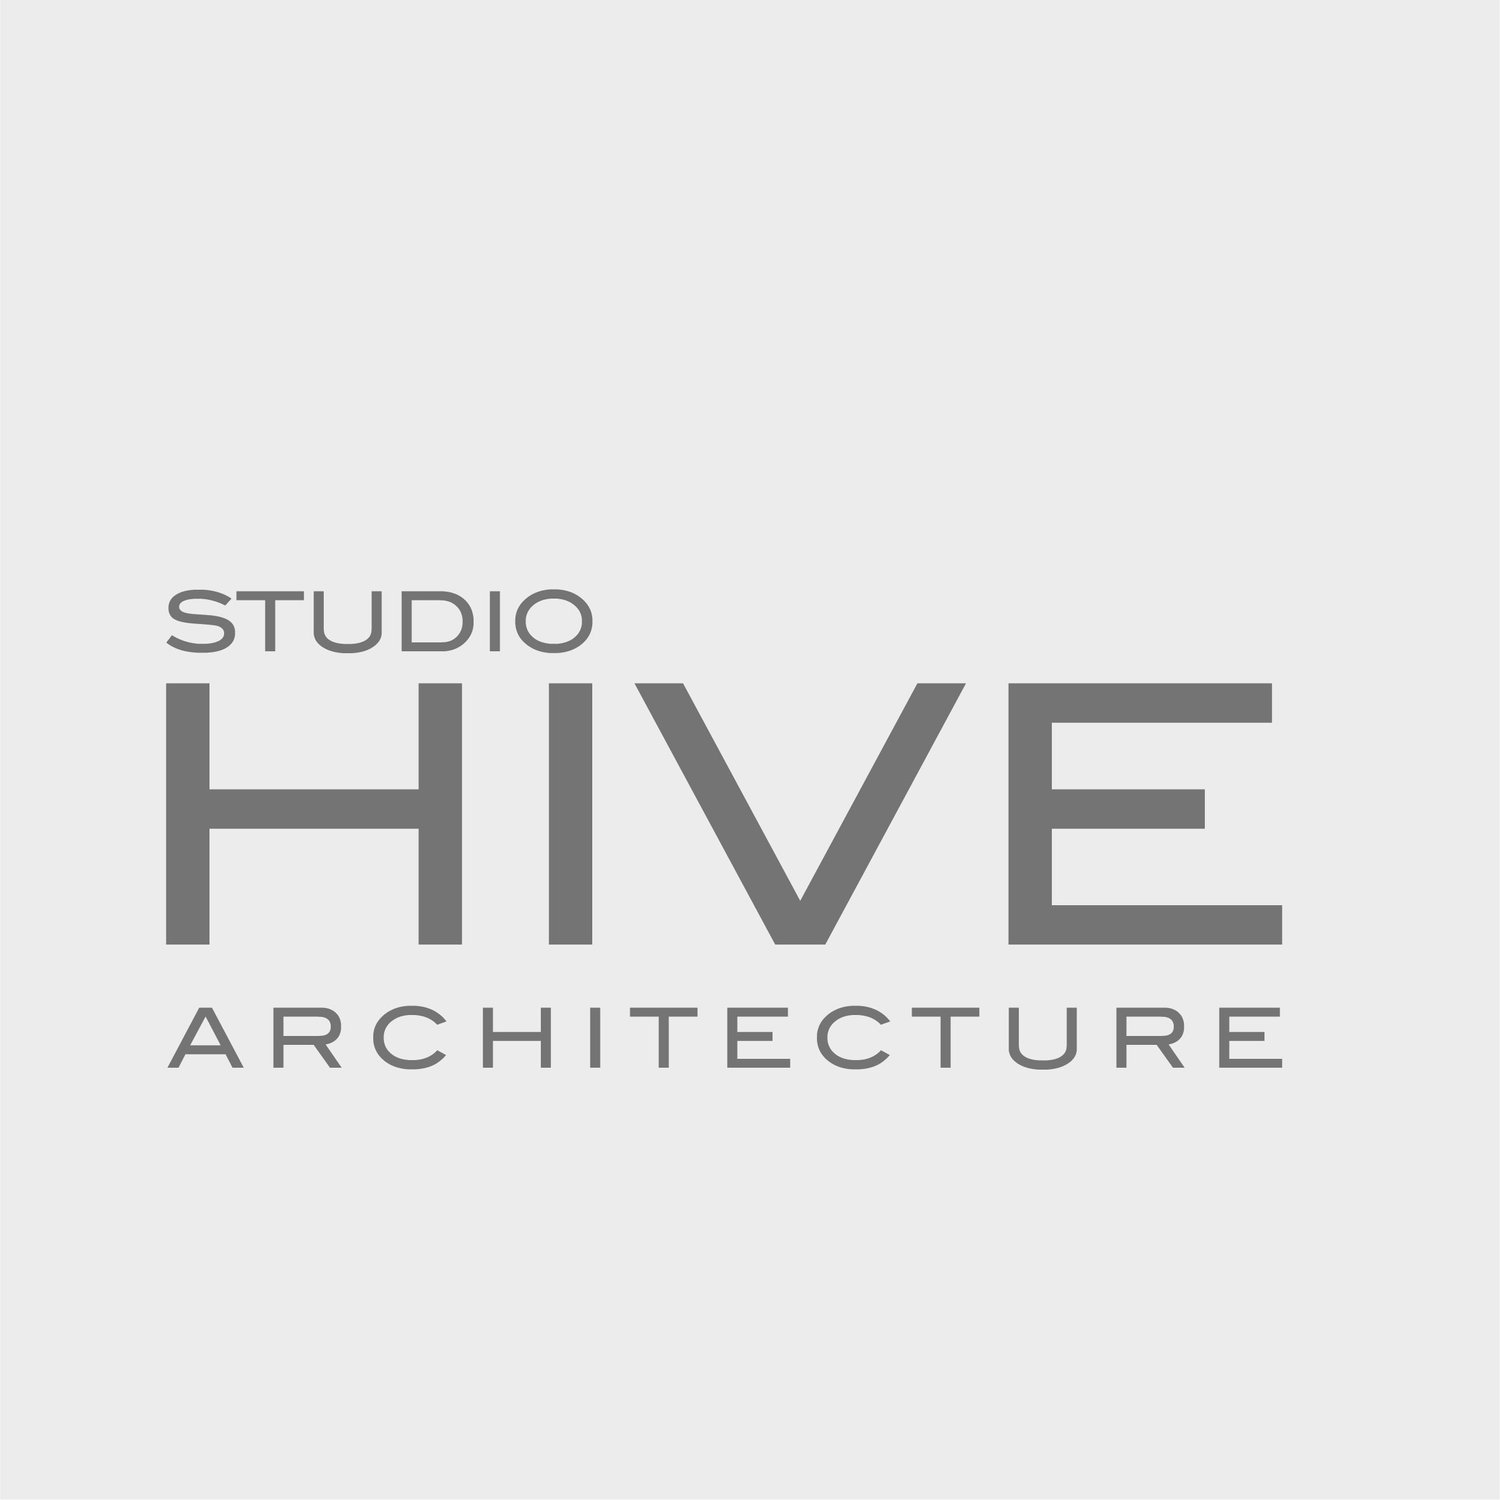 Studio Hive Architecture